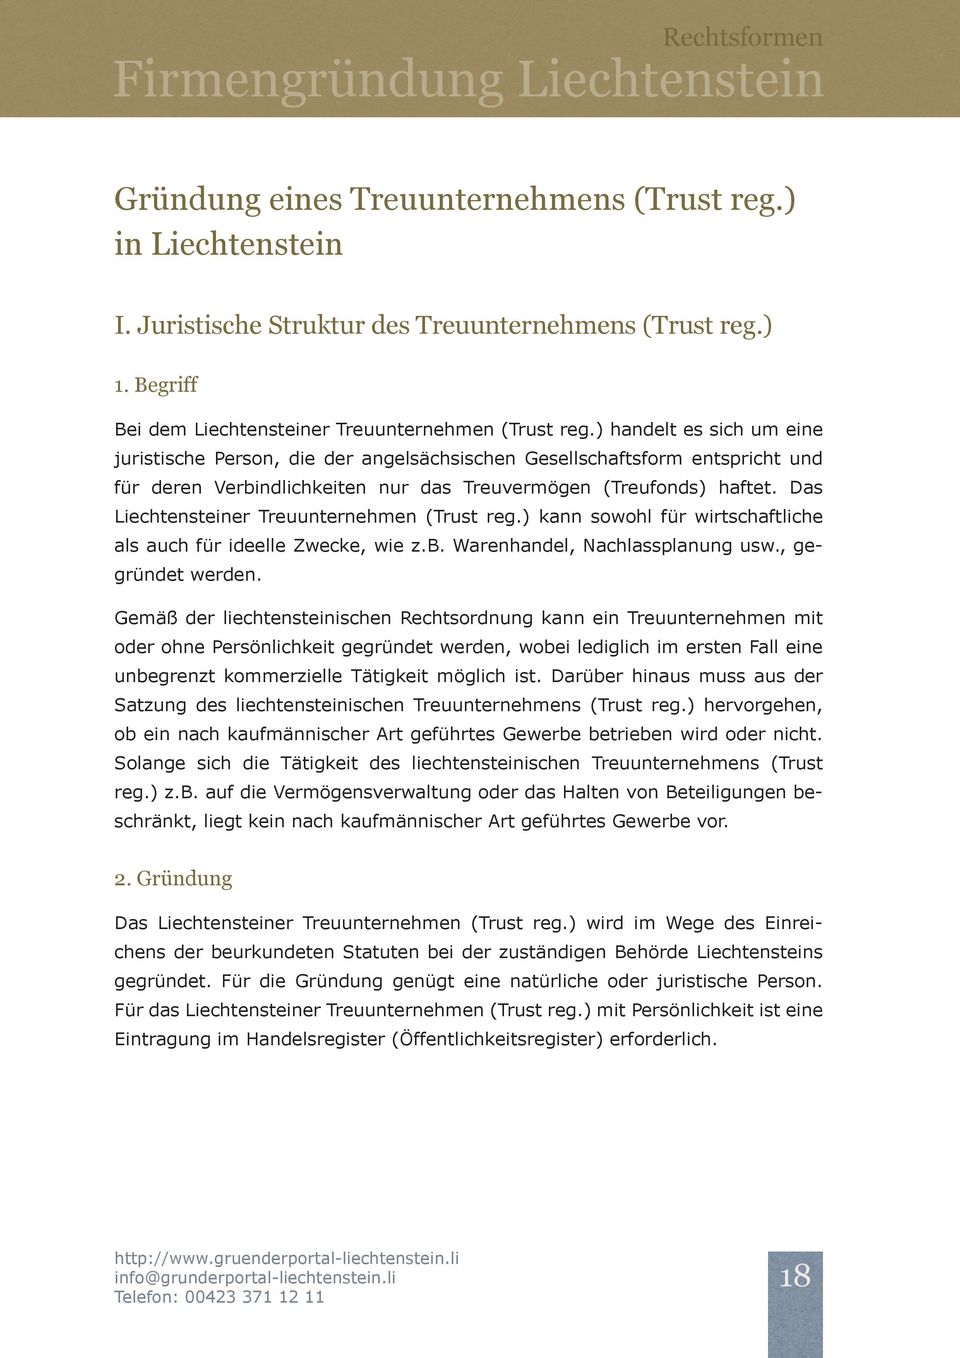 Das Liechtensteiner Treuunternehmen (Trust reg.) kann sowohl für wirtschaftliche als auch für ideelle Zwecke, wie z.b. Warenhandel, Nachlassplanung usw., gegründet werden.